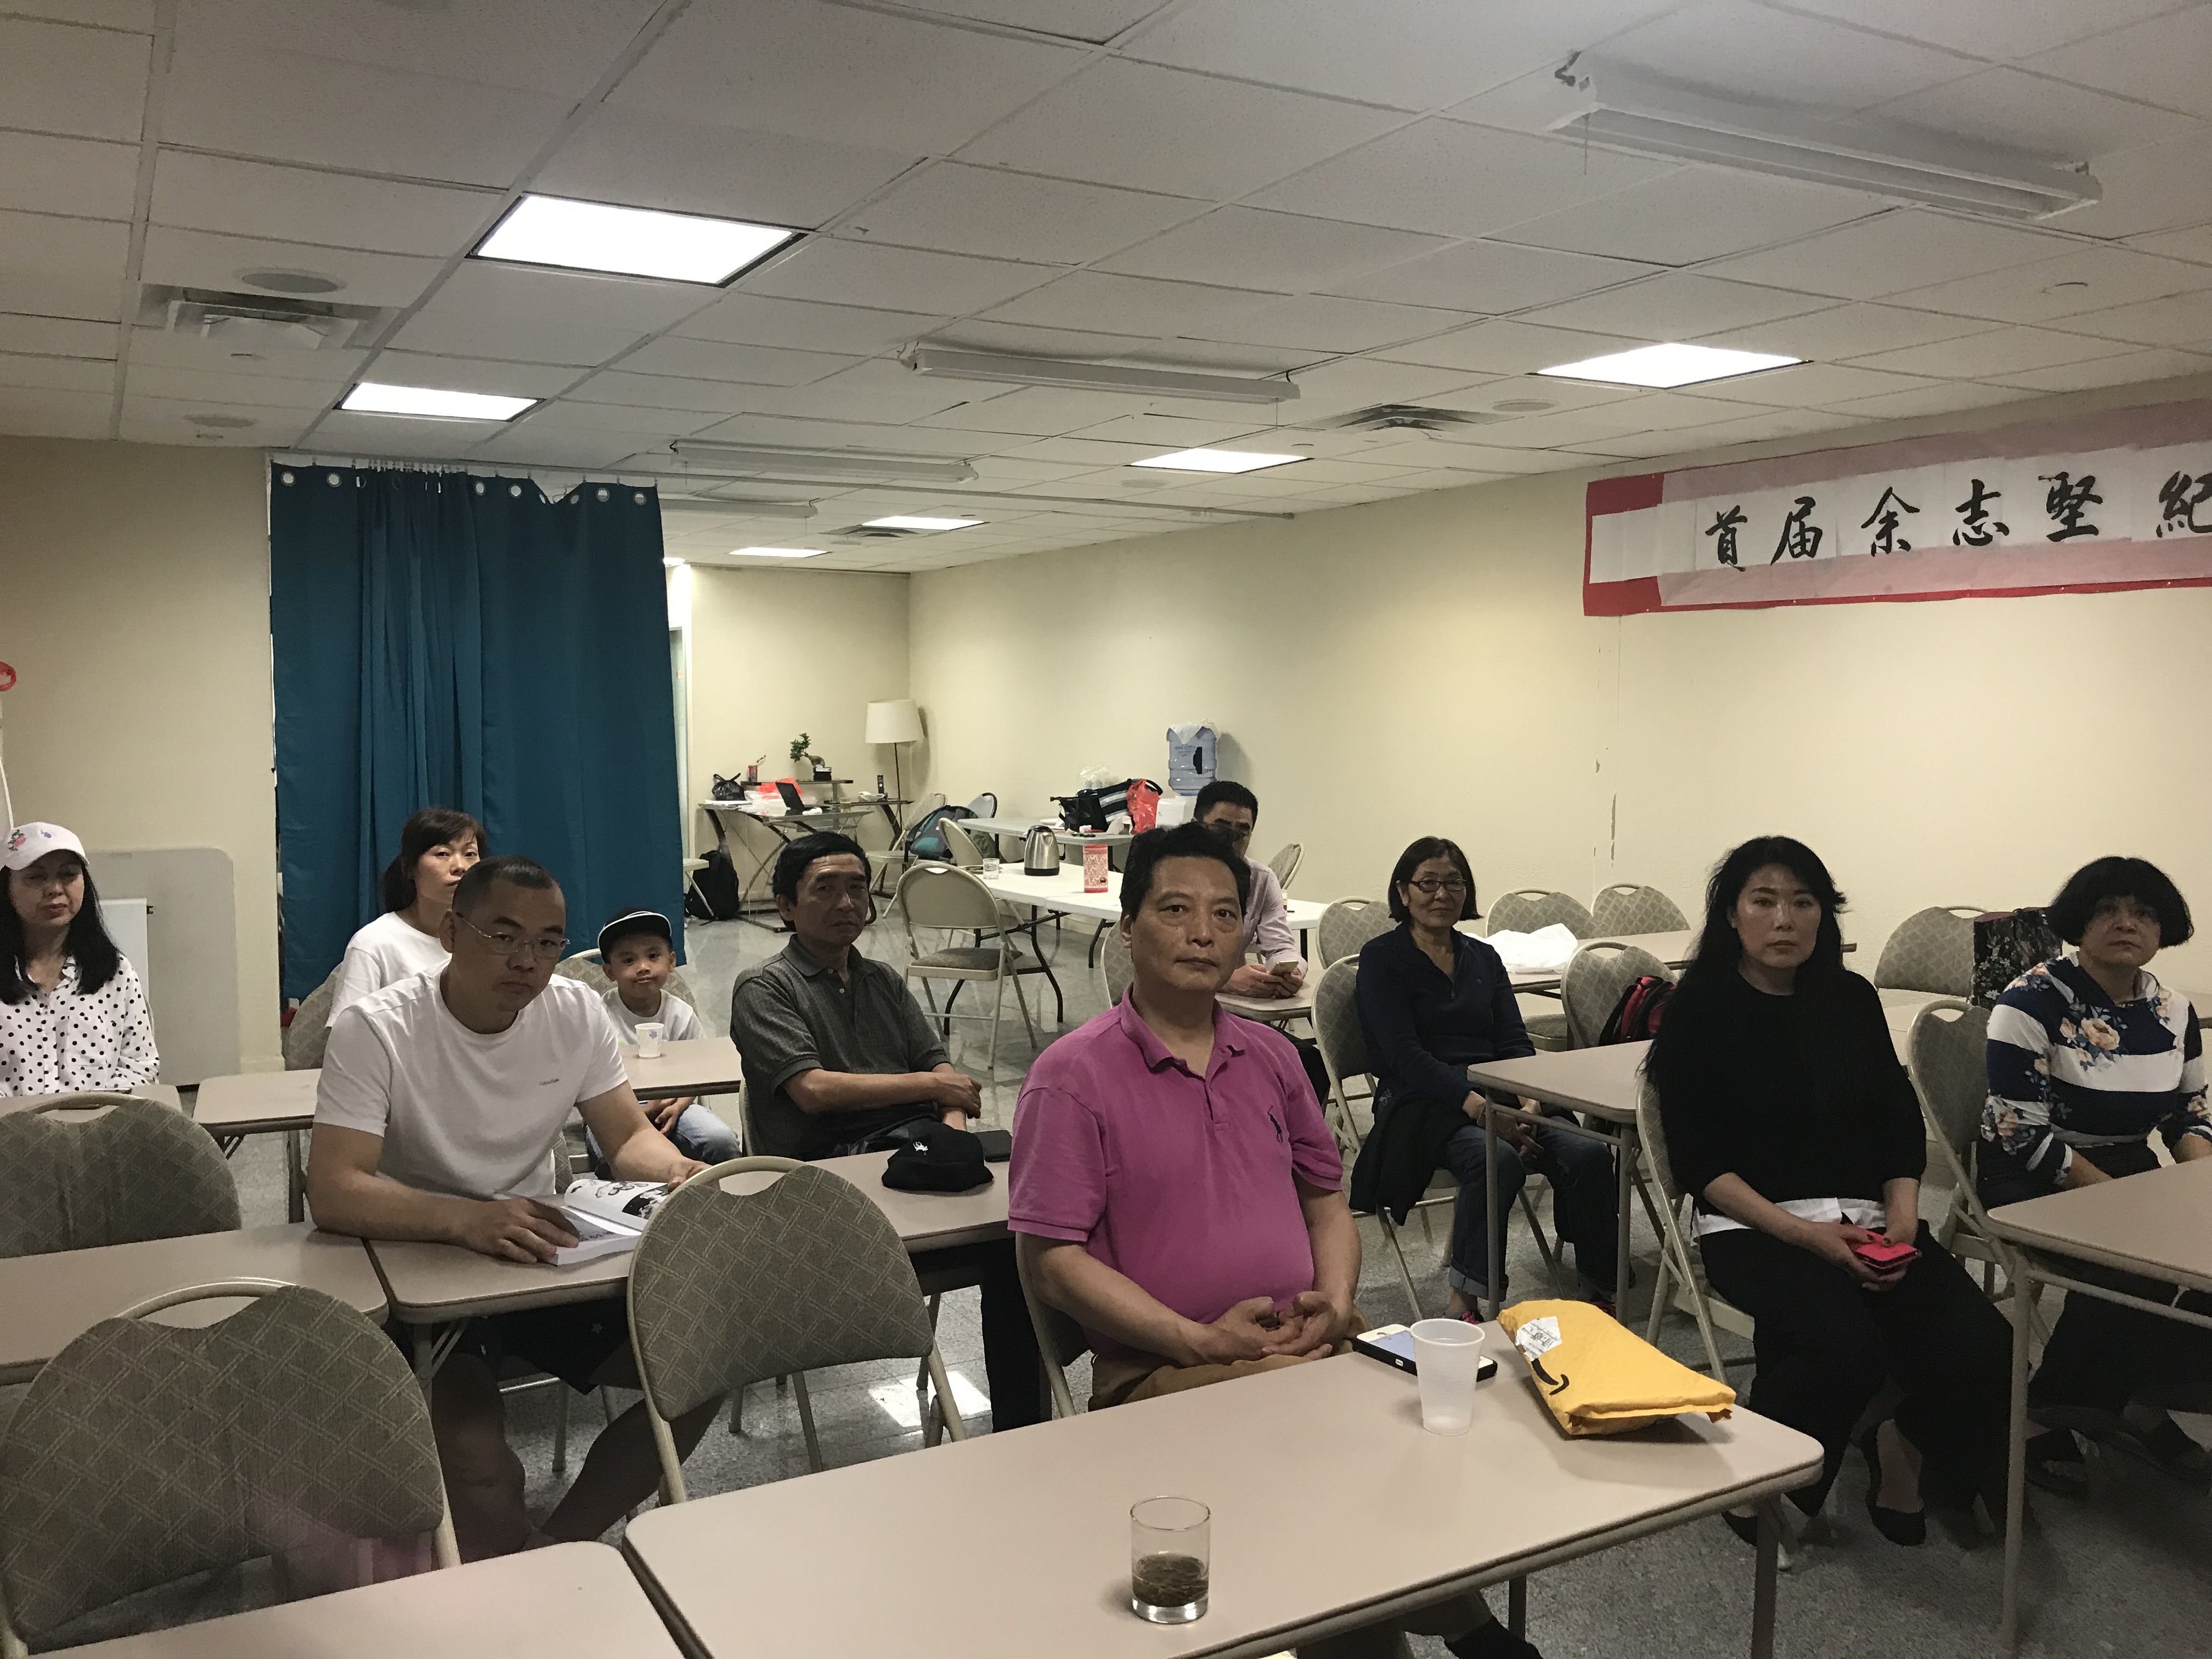 图文简讯：2018年5月20日 中国民主党党员周日组织学习